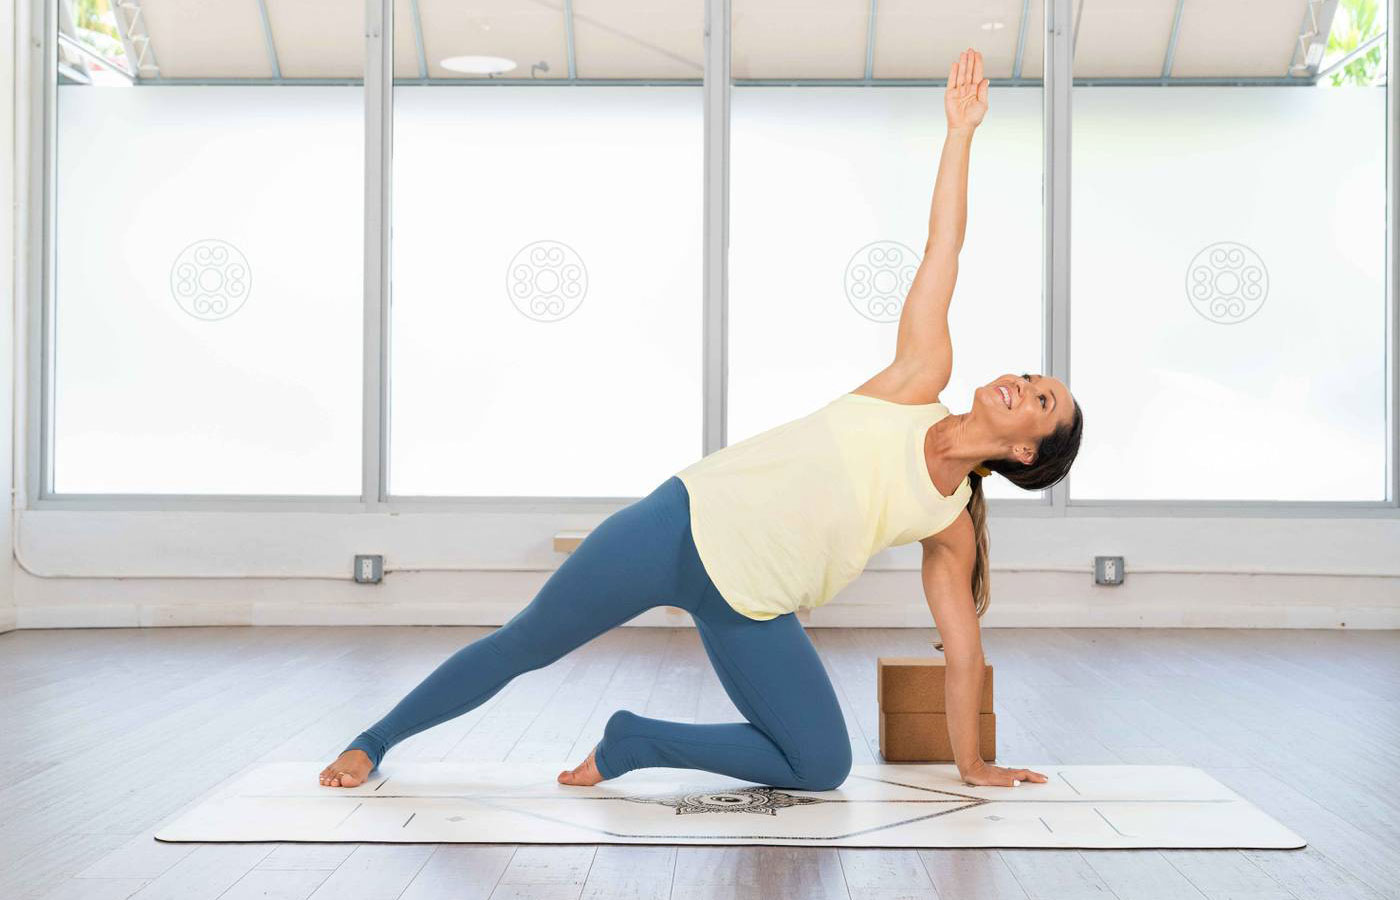 Tập yoga không chỉ giúp giảm mỡ bụng mà còn giải tỏa căng thẳng, nâng cao tinh thần